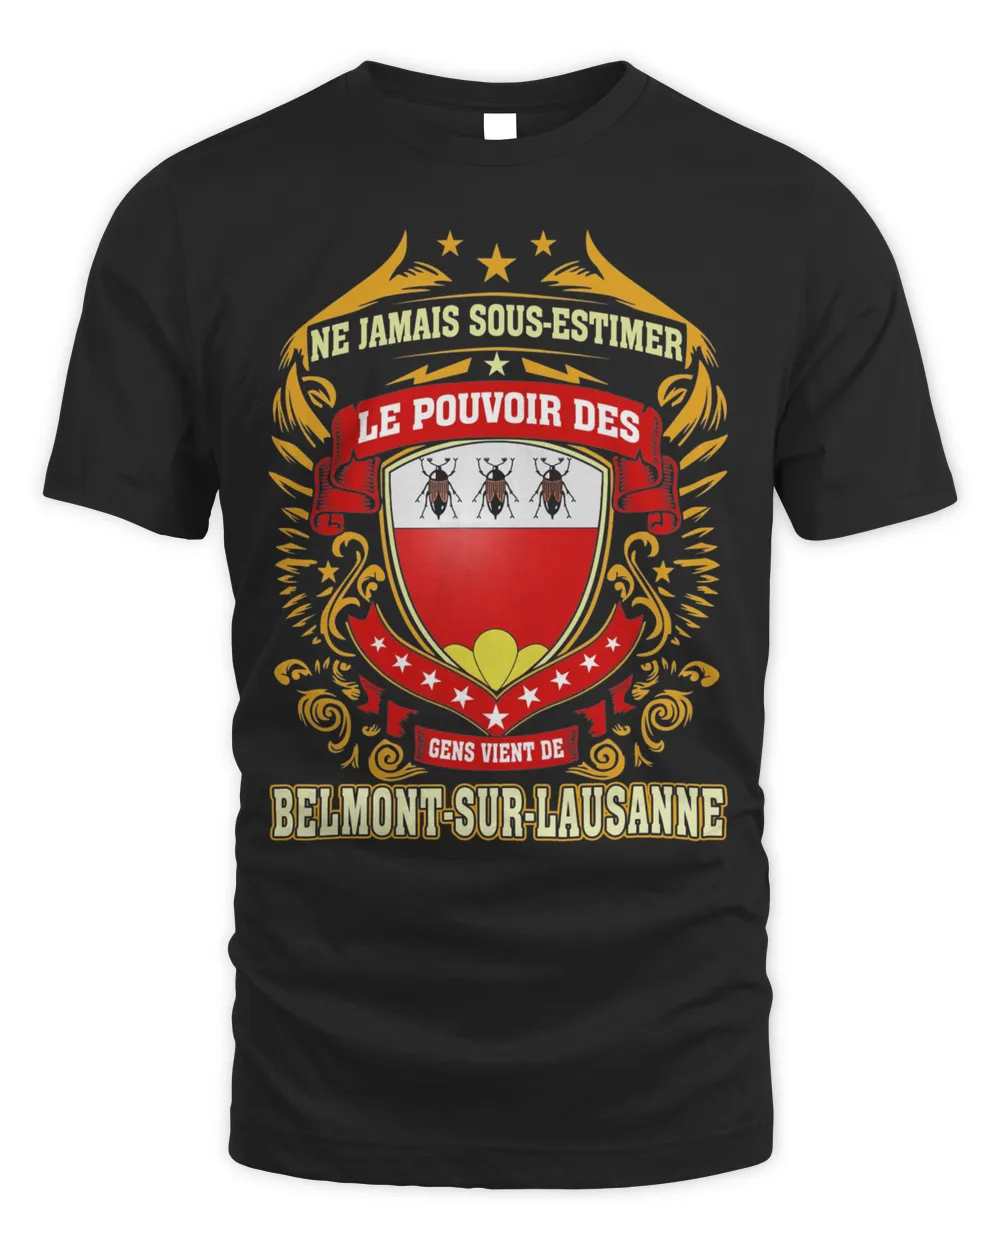 Ne Jamais Sous-estimer Le Pouvoir Des Gens Vient De Belmont-Sur-Lausanne Shirt